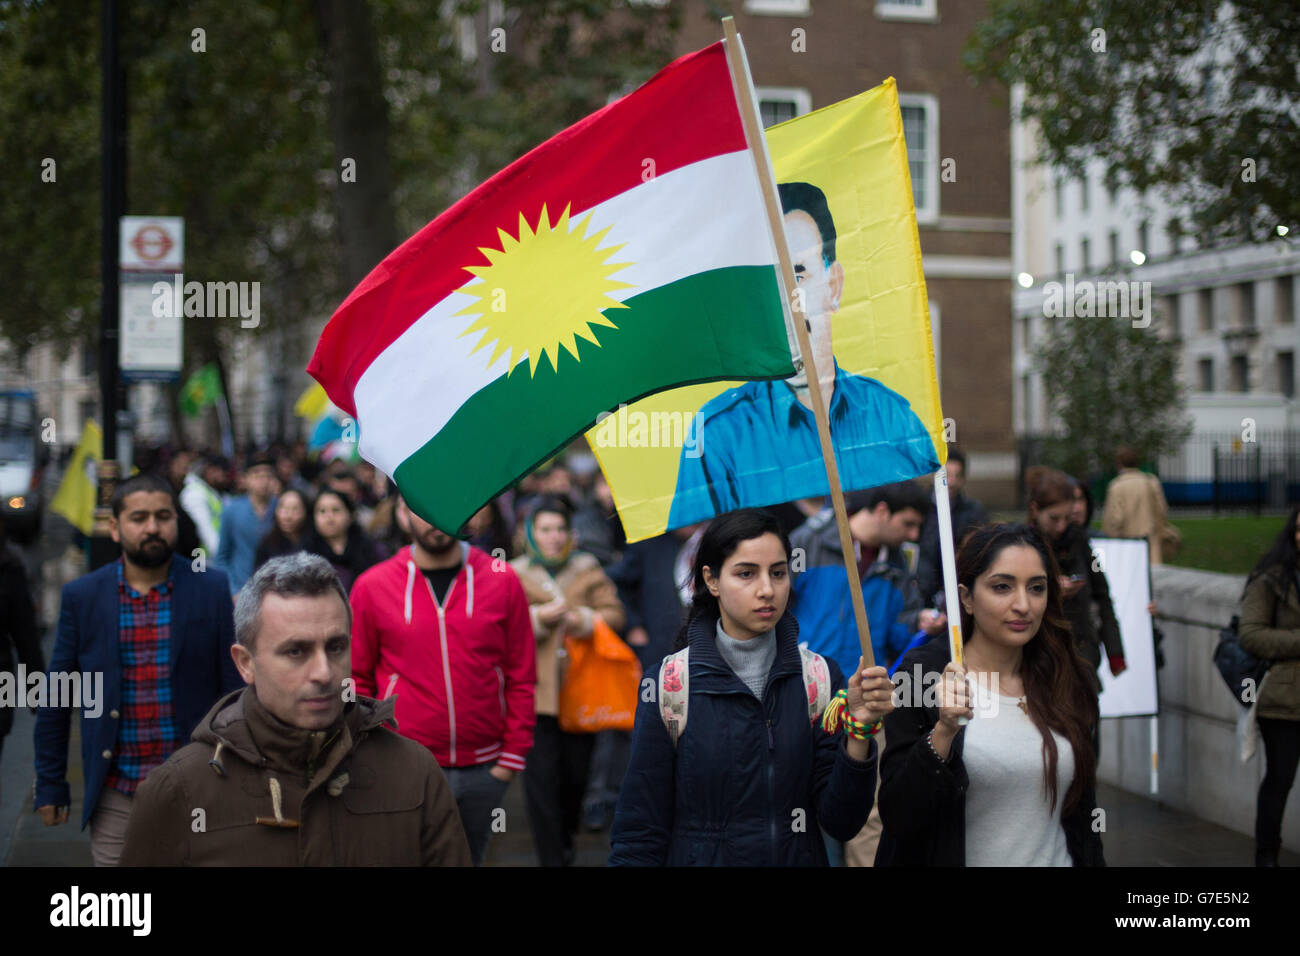 Les personnes manifestant près du pont de Westminster dans le centre de Londres avec des drapeaux et des bannières kurdes contre la menace de l'EI envers les minorités kurdes et autres en Syrie et en Irak. Banque D'Images